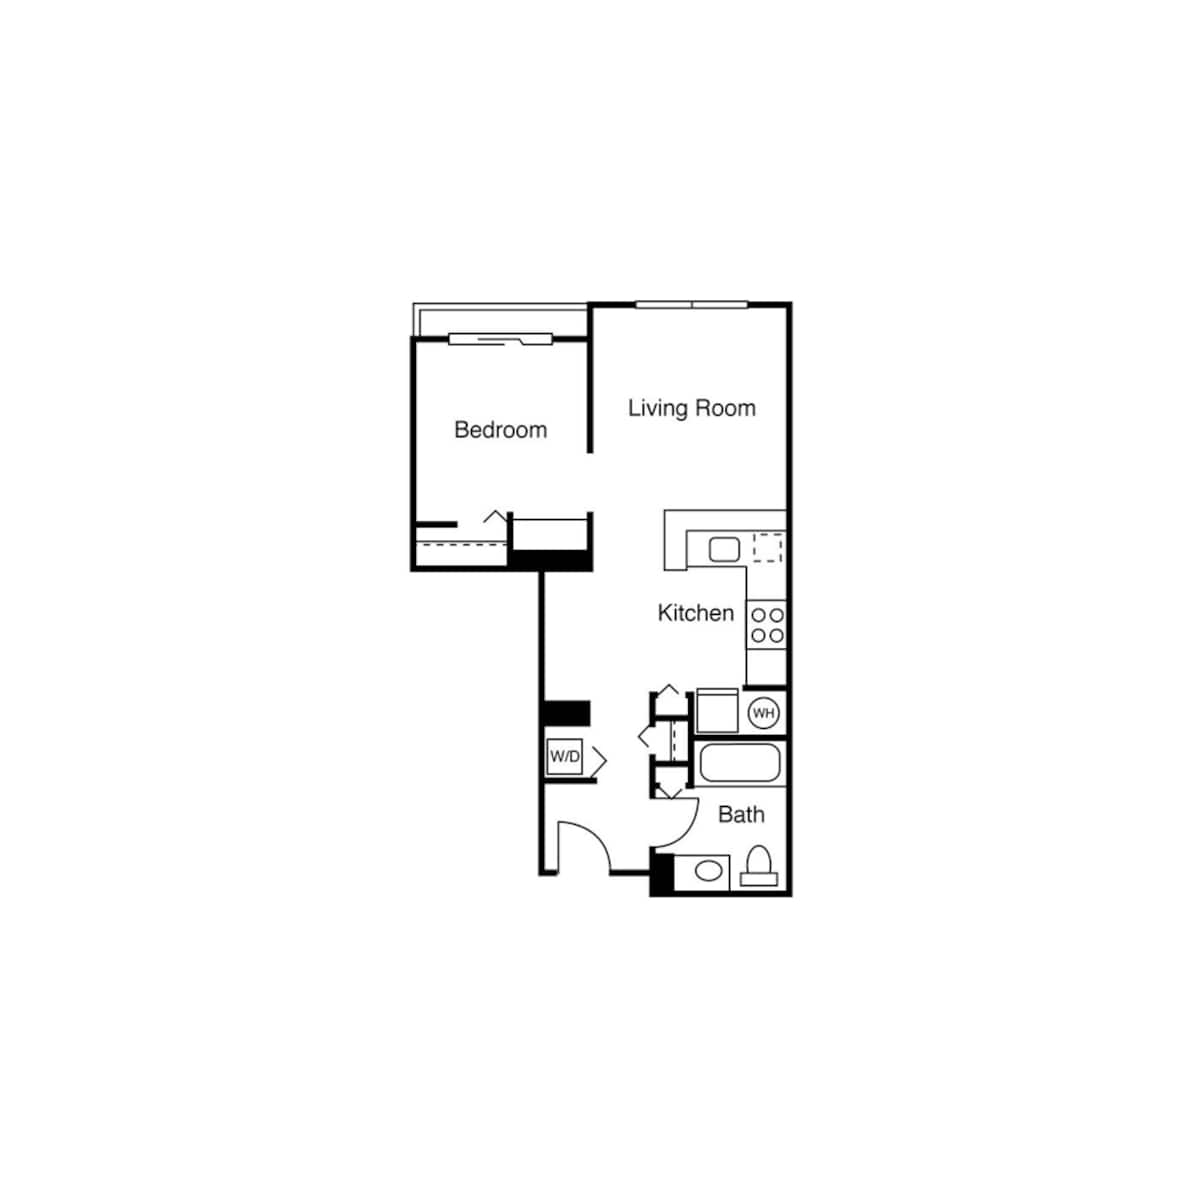 Floorplan diagram for Studio C, showing 1 bedroom